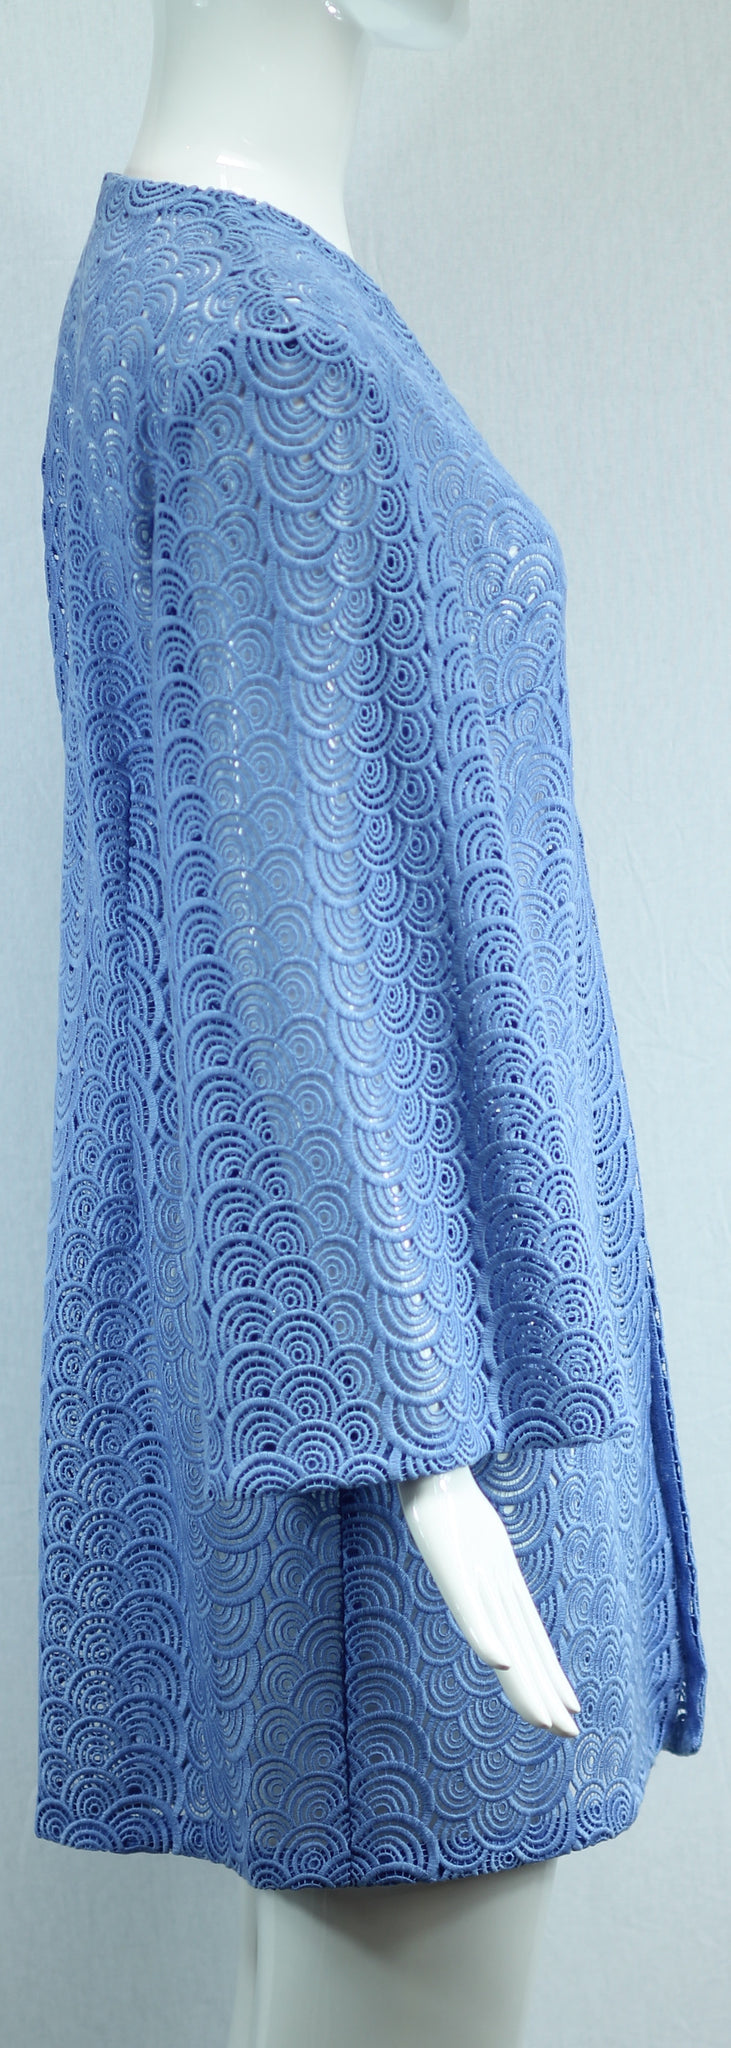 Janet Deleuse Couture Blue Lace Coat,SALE, SOLD